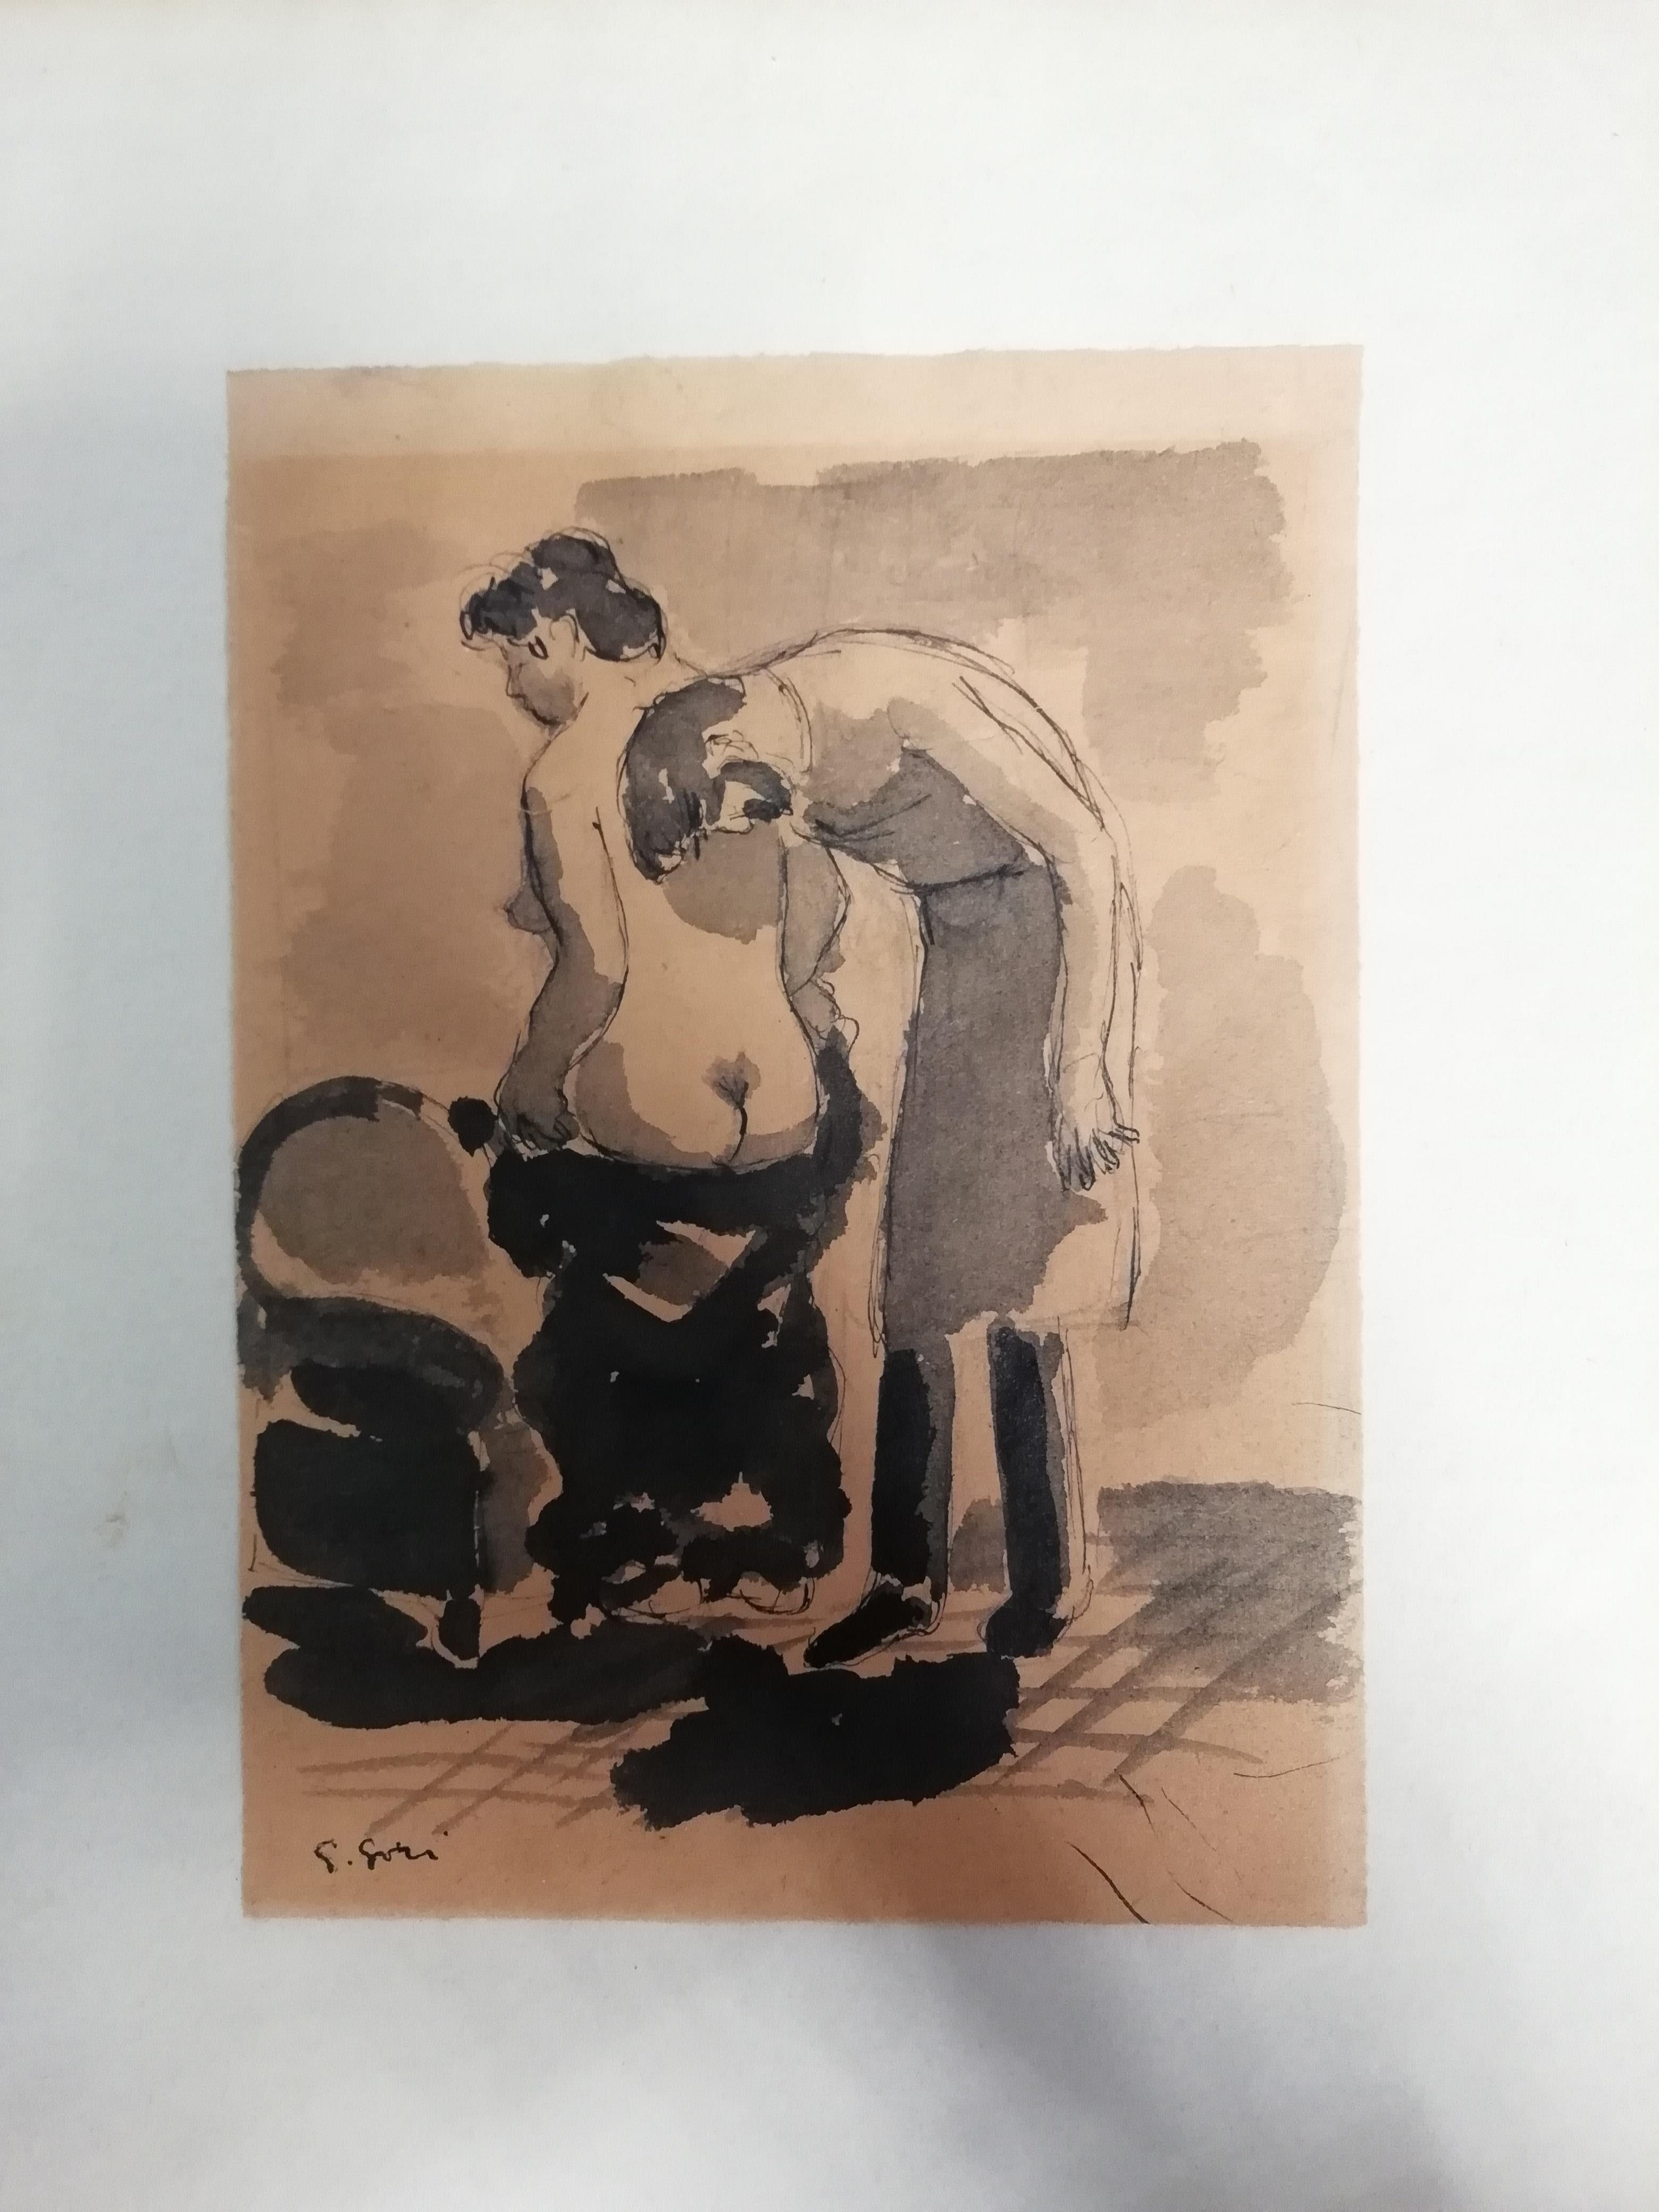 Eine Skizze des italienischen Künstlers Gino Paolo Gori mit Tinte auf Papier, die zwei badende Frauen darstellt. Die Zeichnung ist in der linken unteren Ecke signiert. Gerahmt mit einem Aufkleber der Galleria Donatello, Florenz.

Maße der bemalten